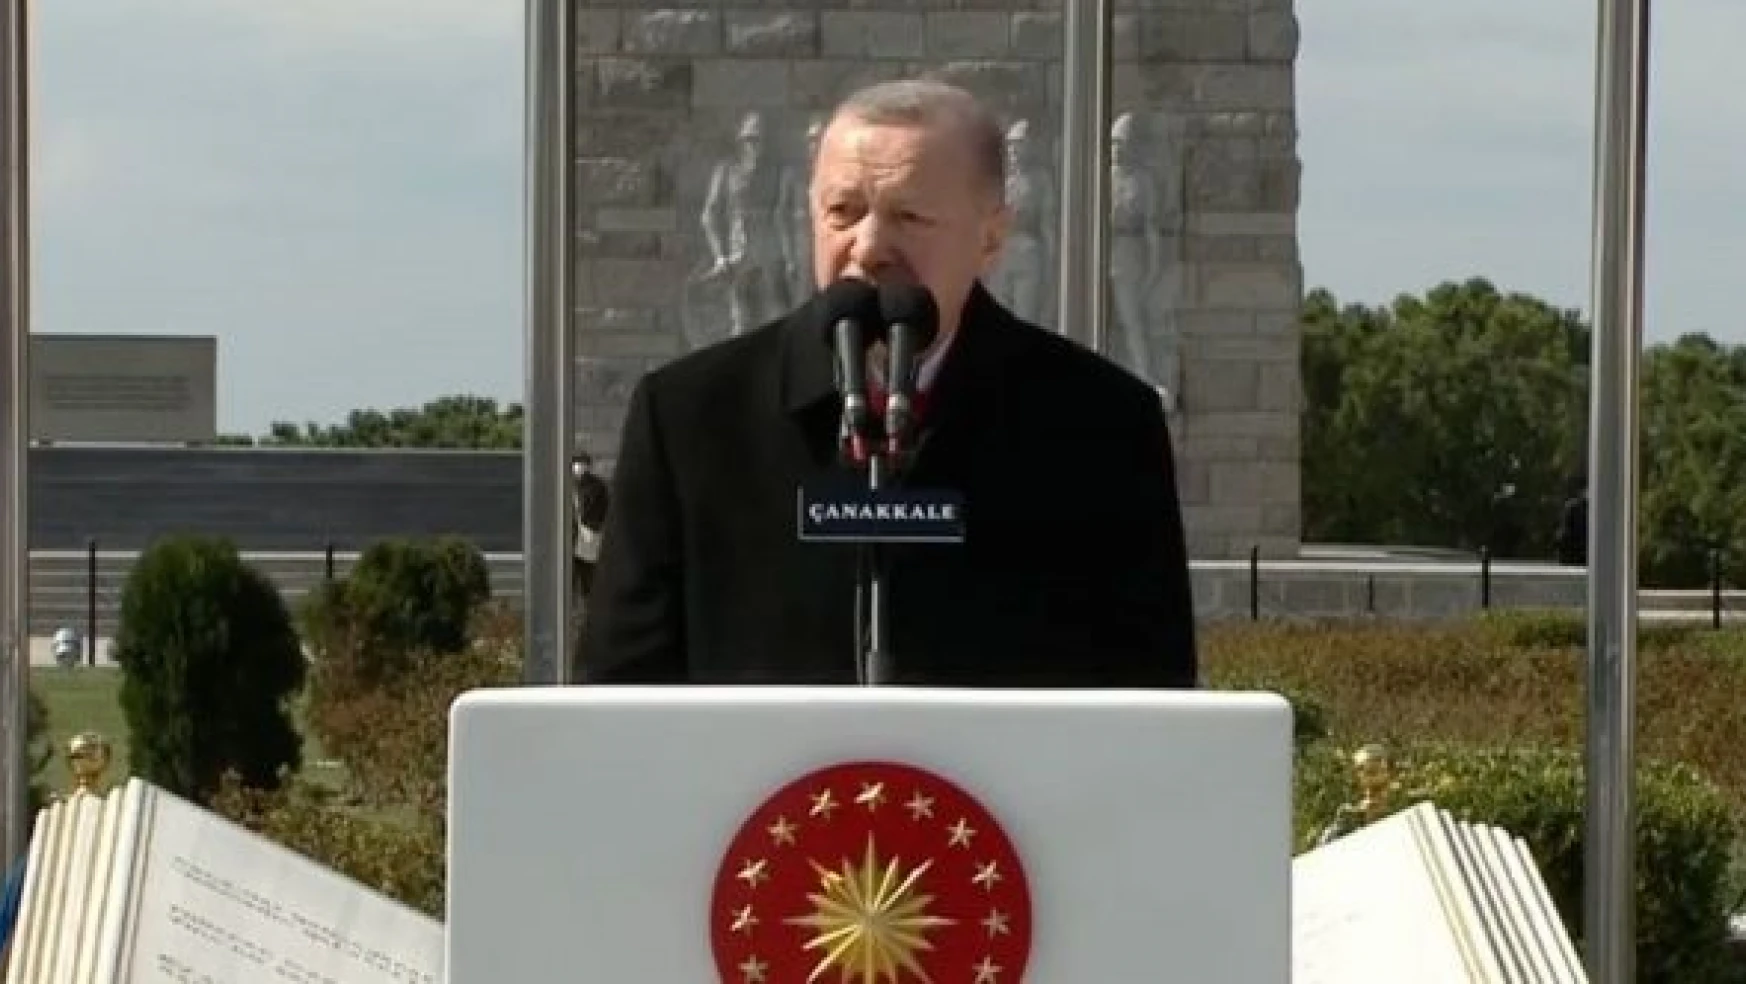 Cumhurbaşkanı Erdoğan: "Çanakkale 107 yıl önce tarihin akışını değiştirdi"